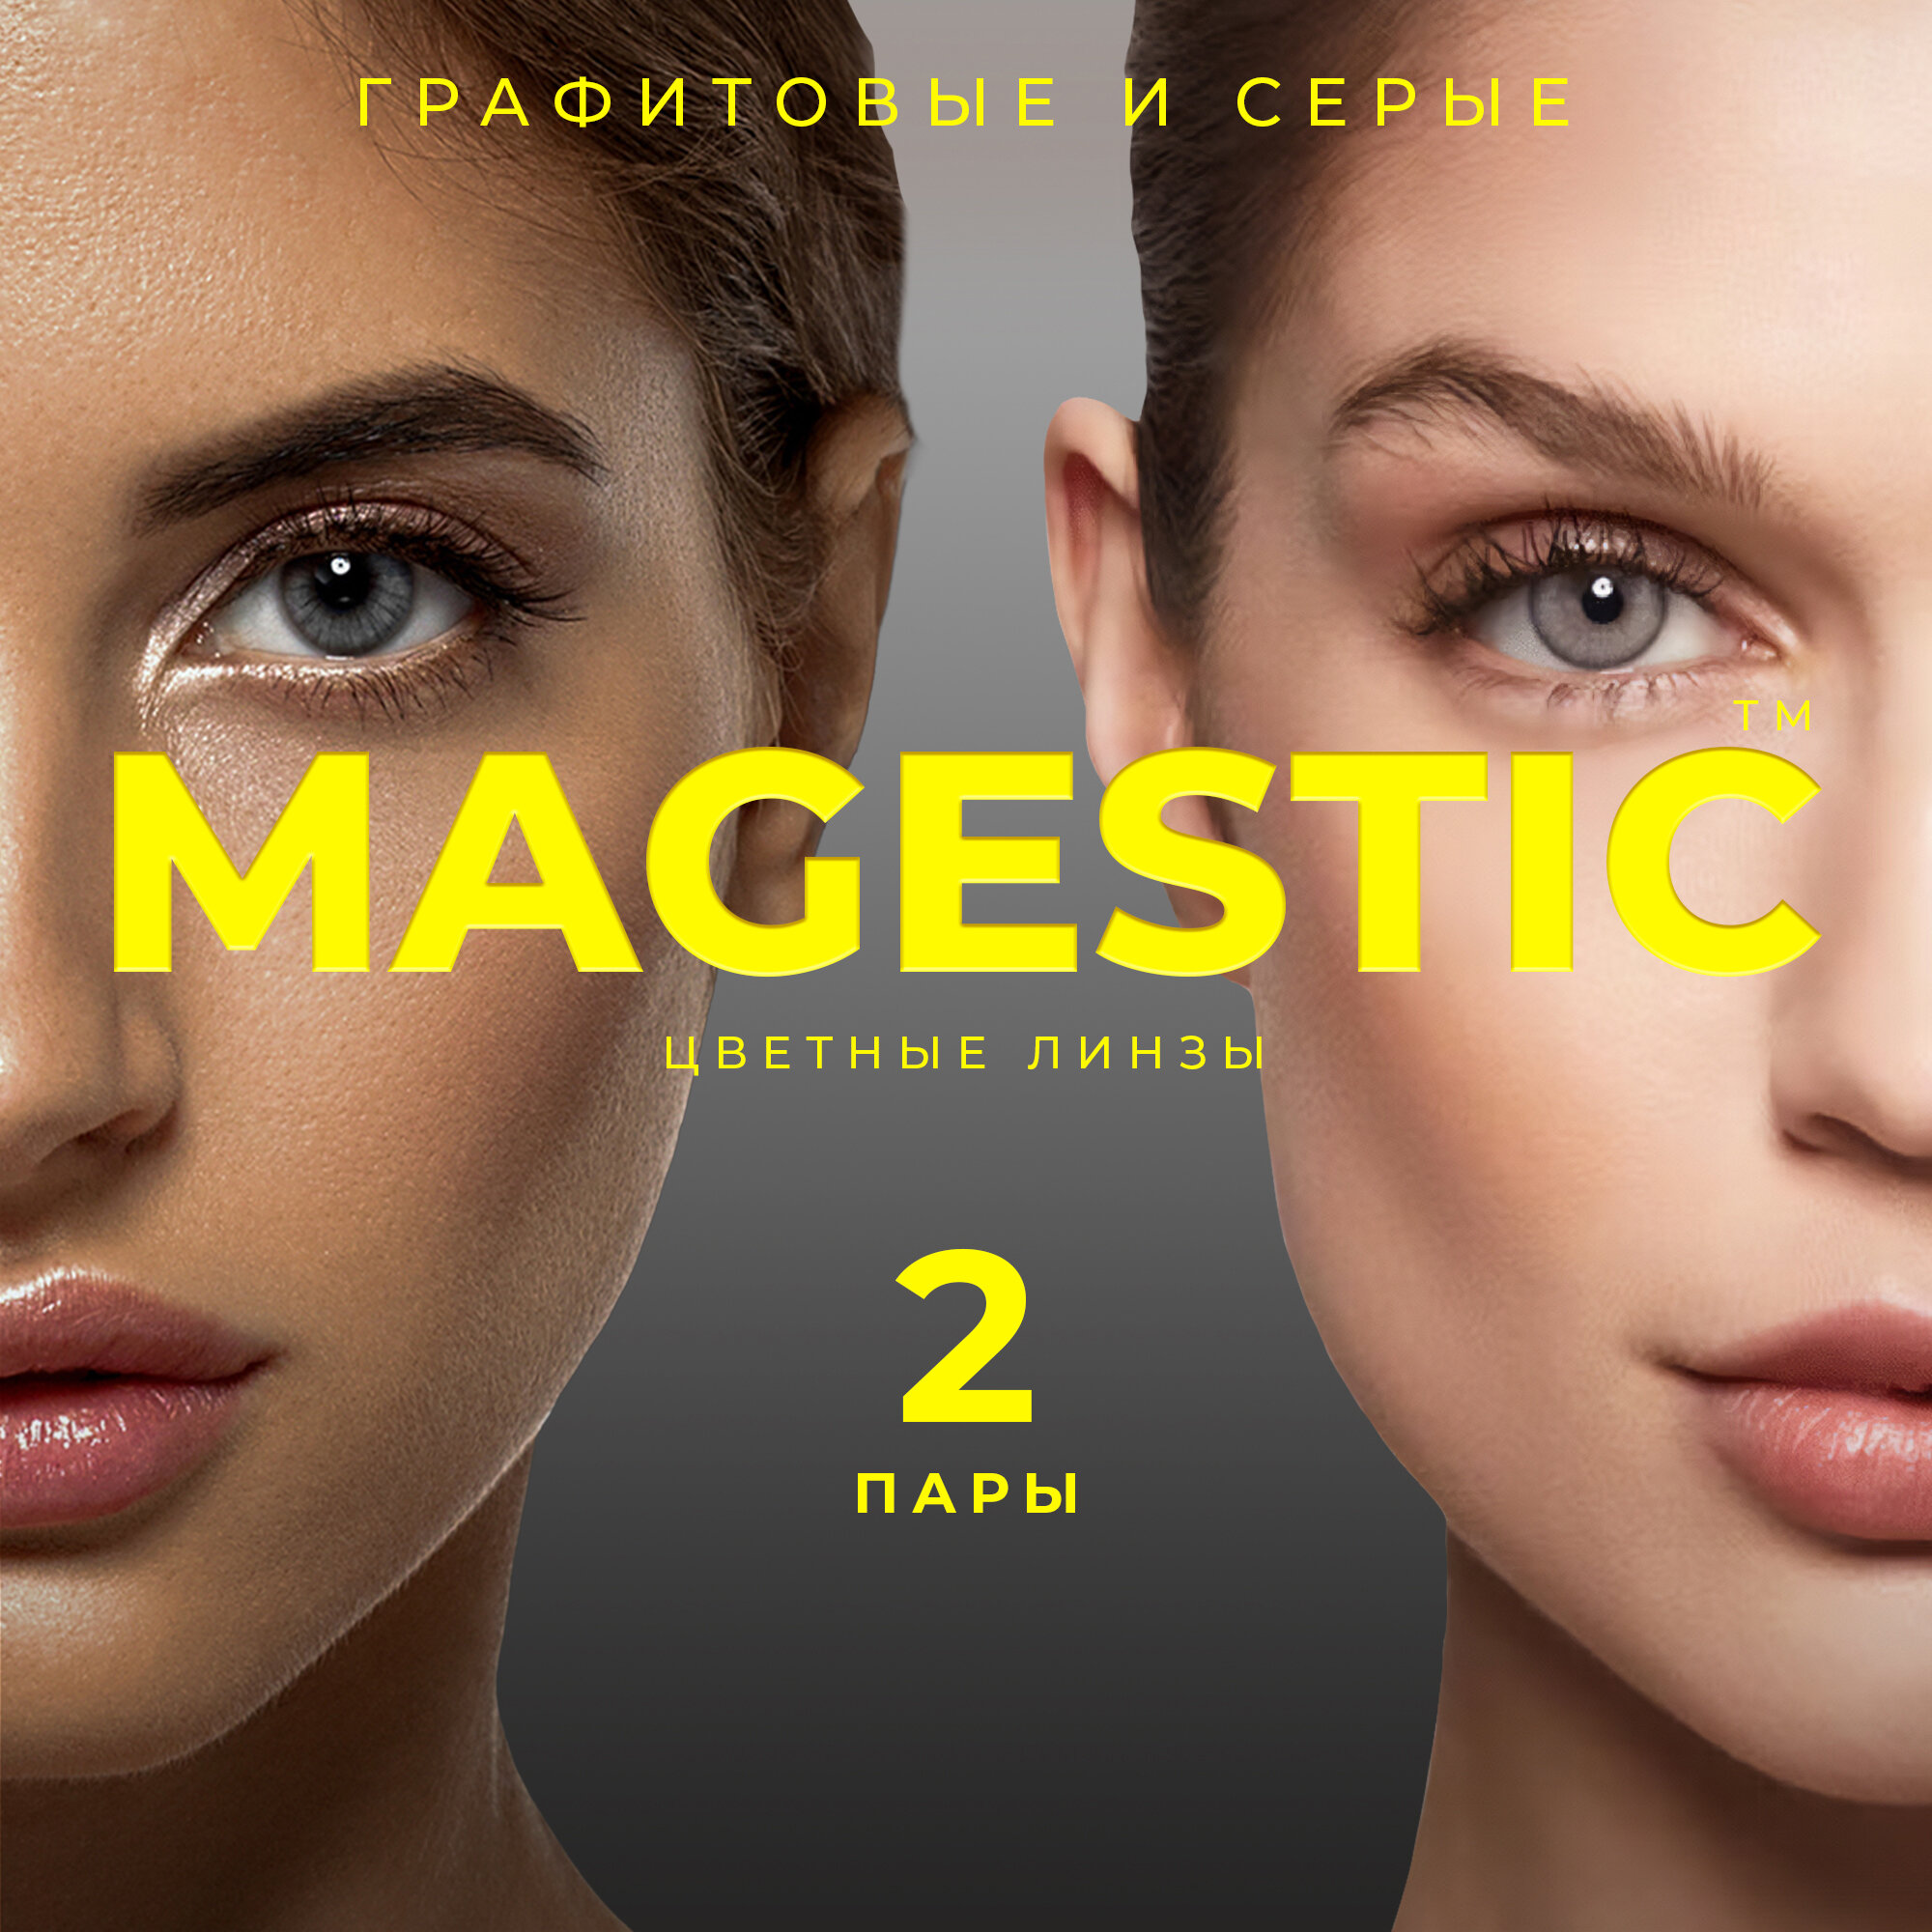 Цветные графитовые + серые контактные линзы для глаз MAGESTIC 2 пары, 12 месяцев, 0.00, кривизна 8,6 мм